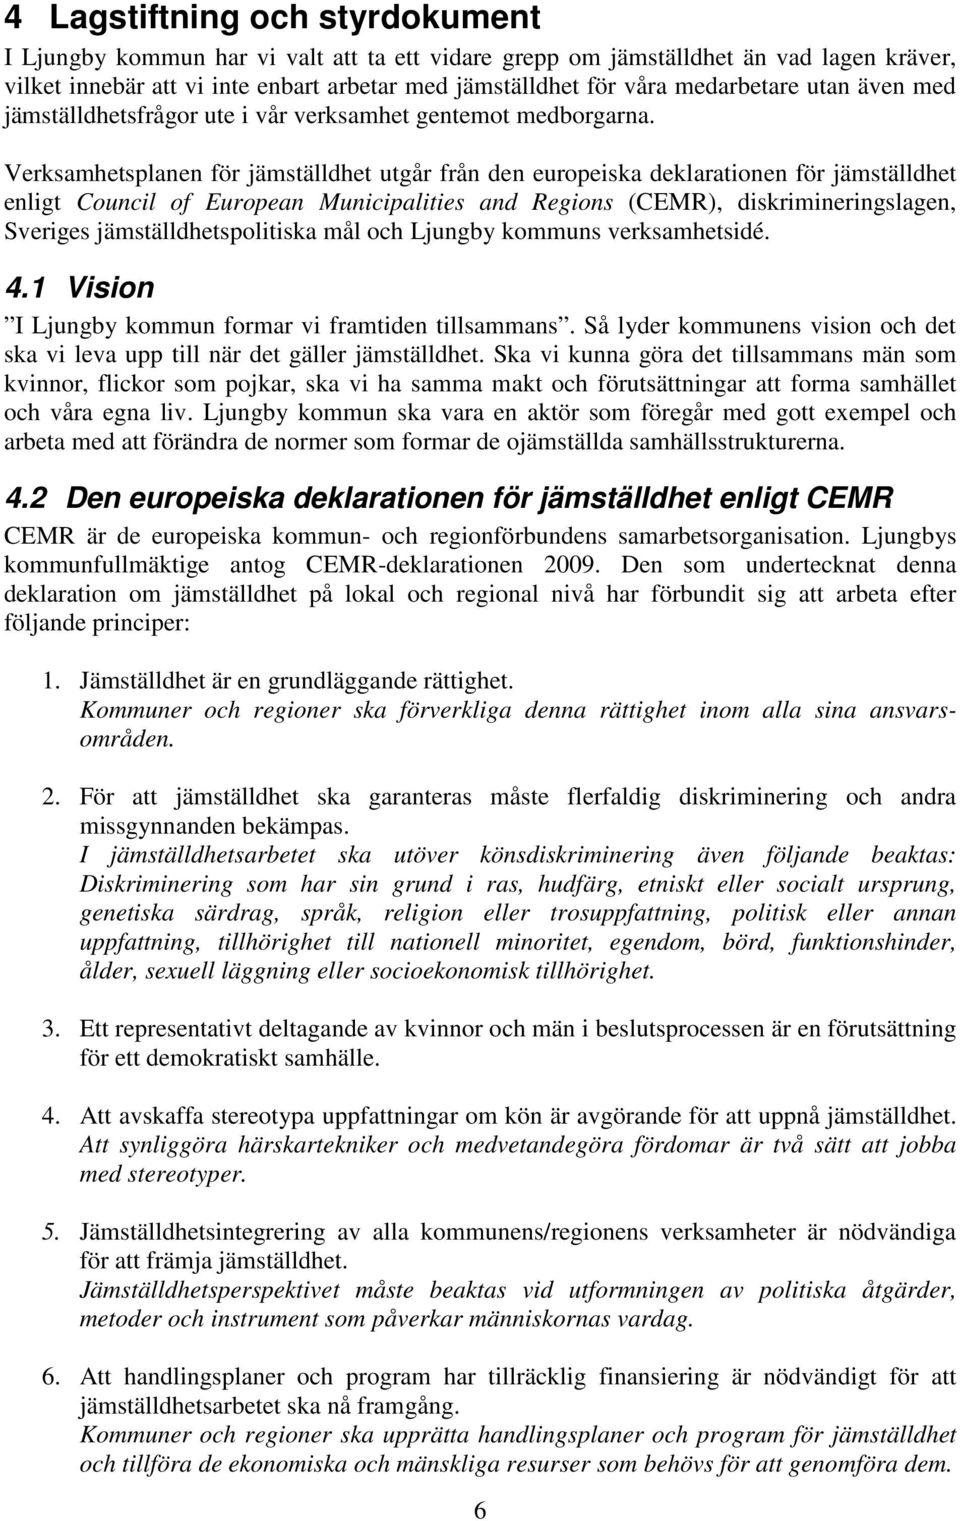 Verksamhetsplanen för jämställdhet utgår från den europeiska deklarationen för jämställdhet enligt Council of European Municipalities and Regions (CEMR), diskrimineringslagen, Sveriges